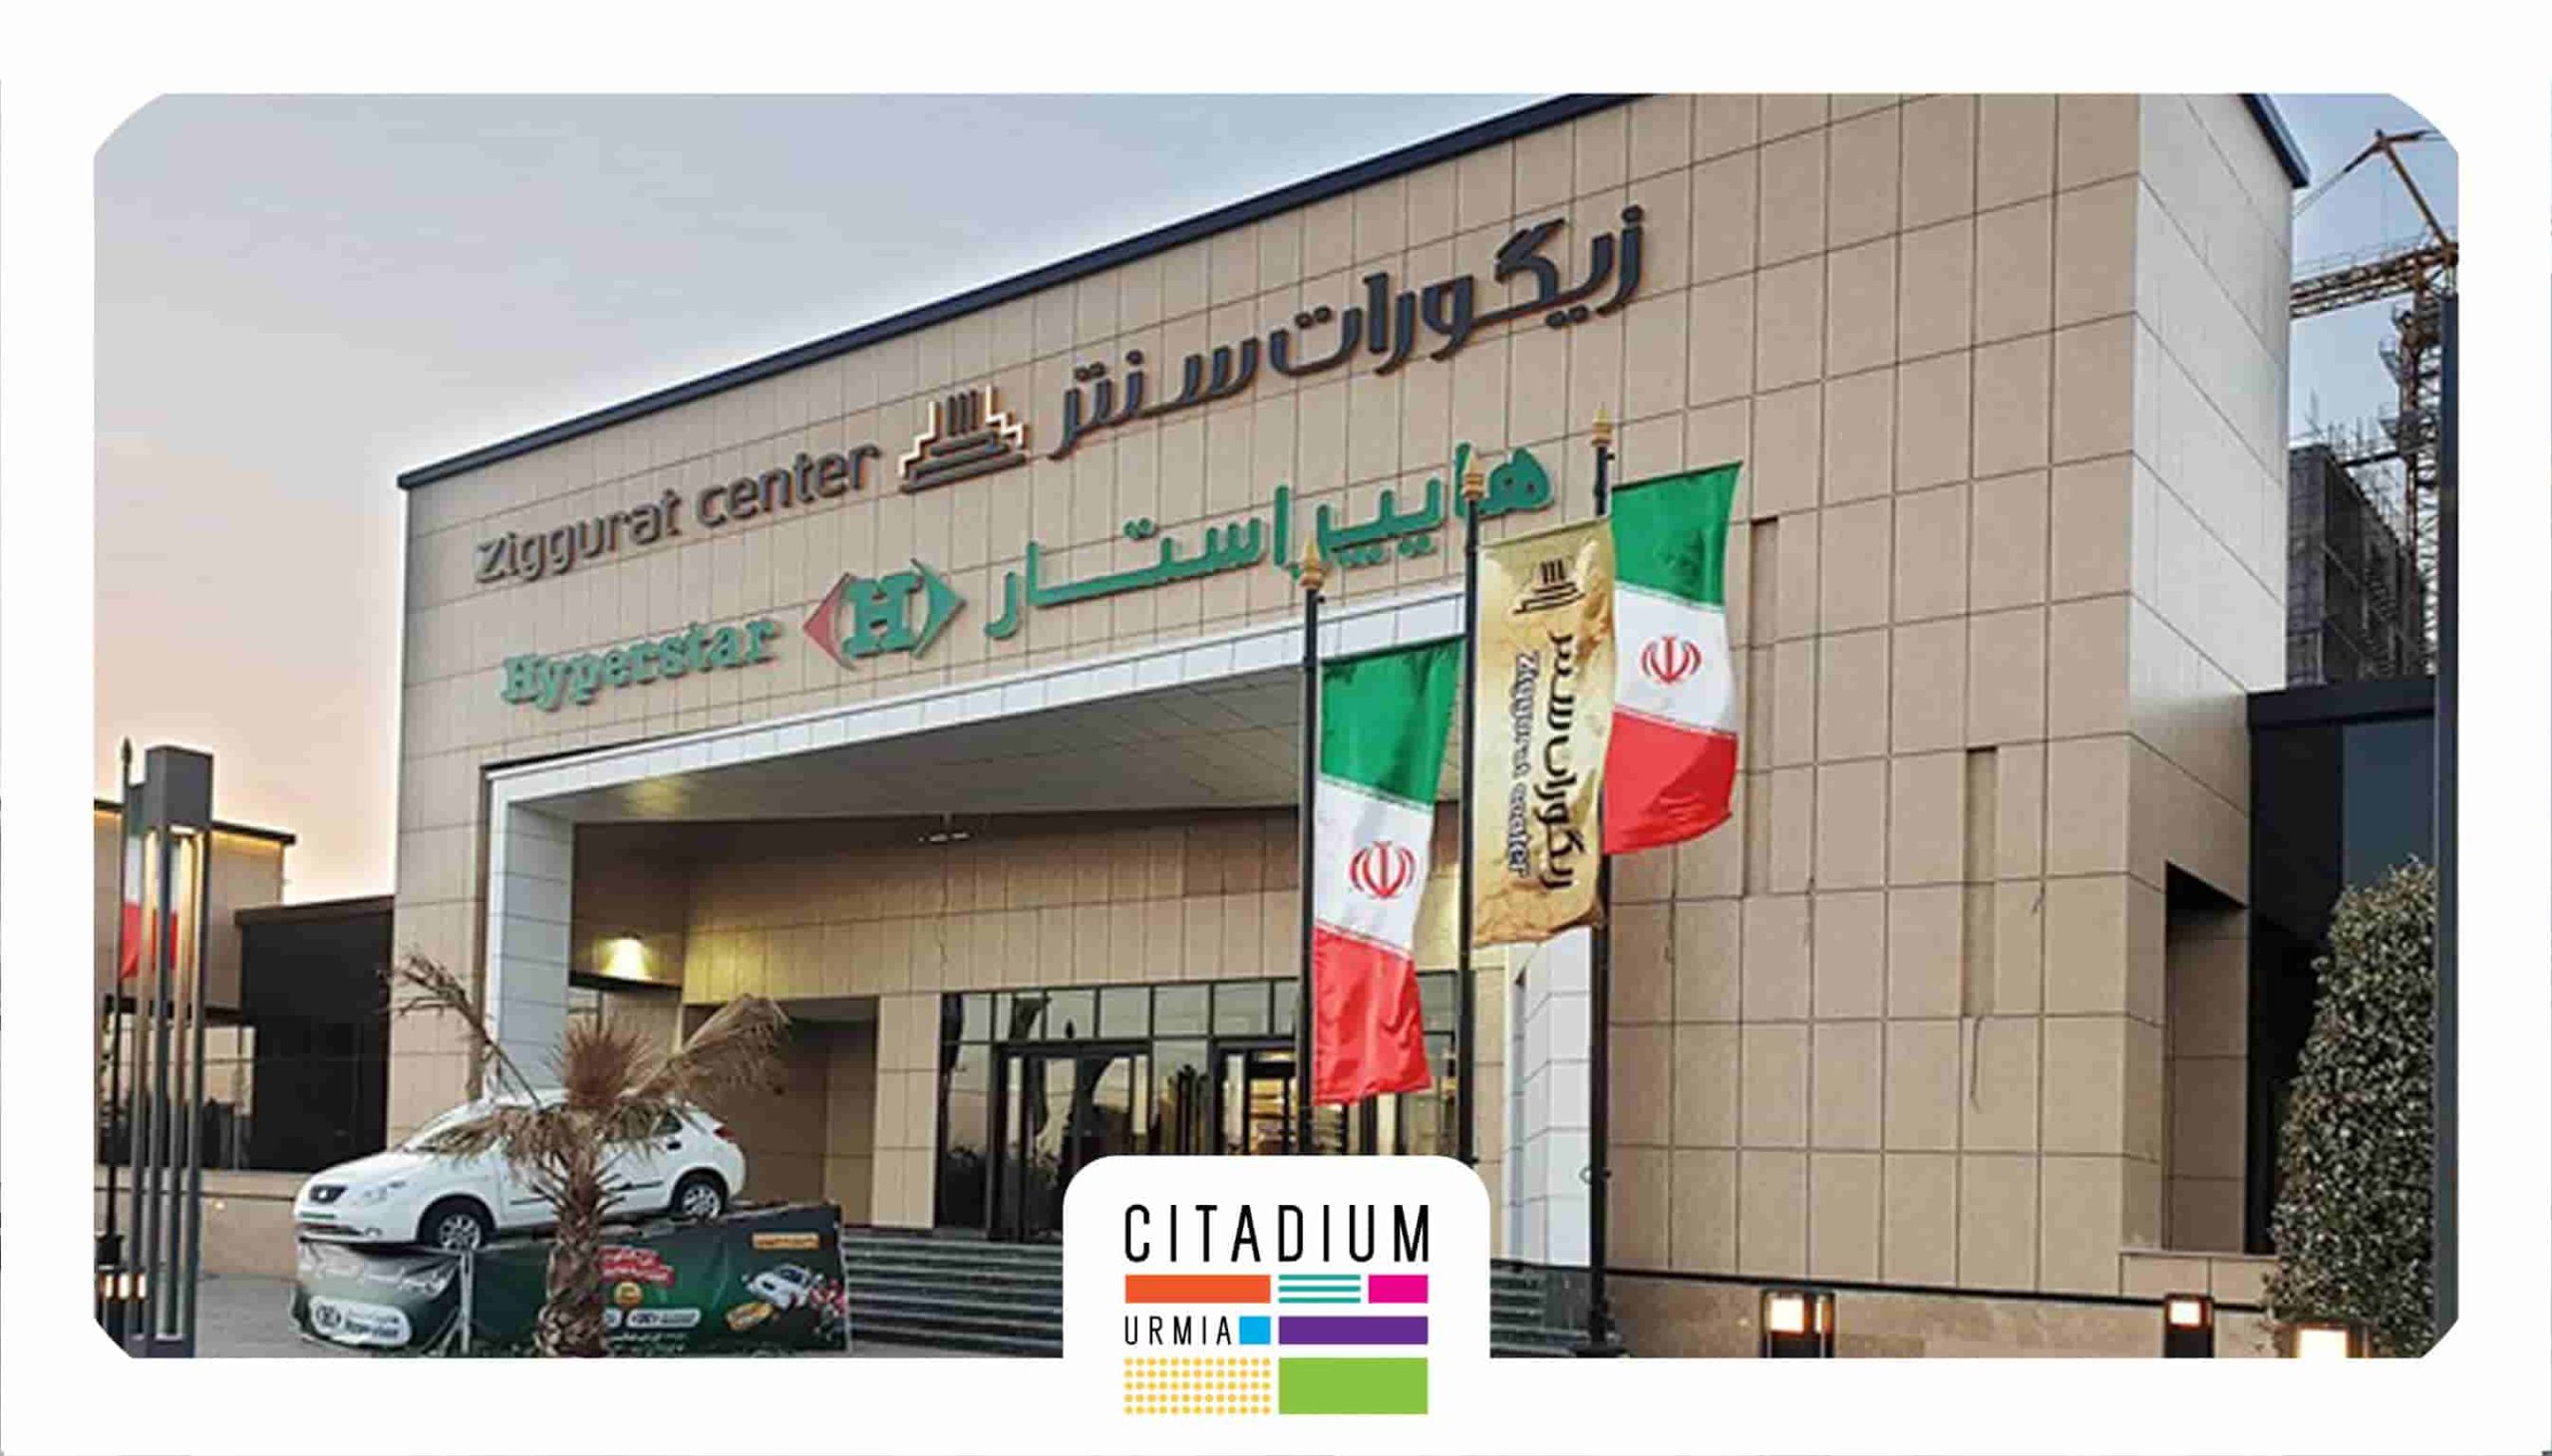 زیگورات سنتر-بهترین مرکز خرید در ایران 